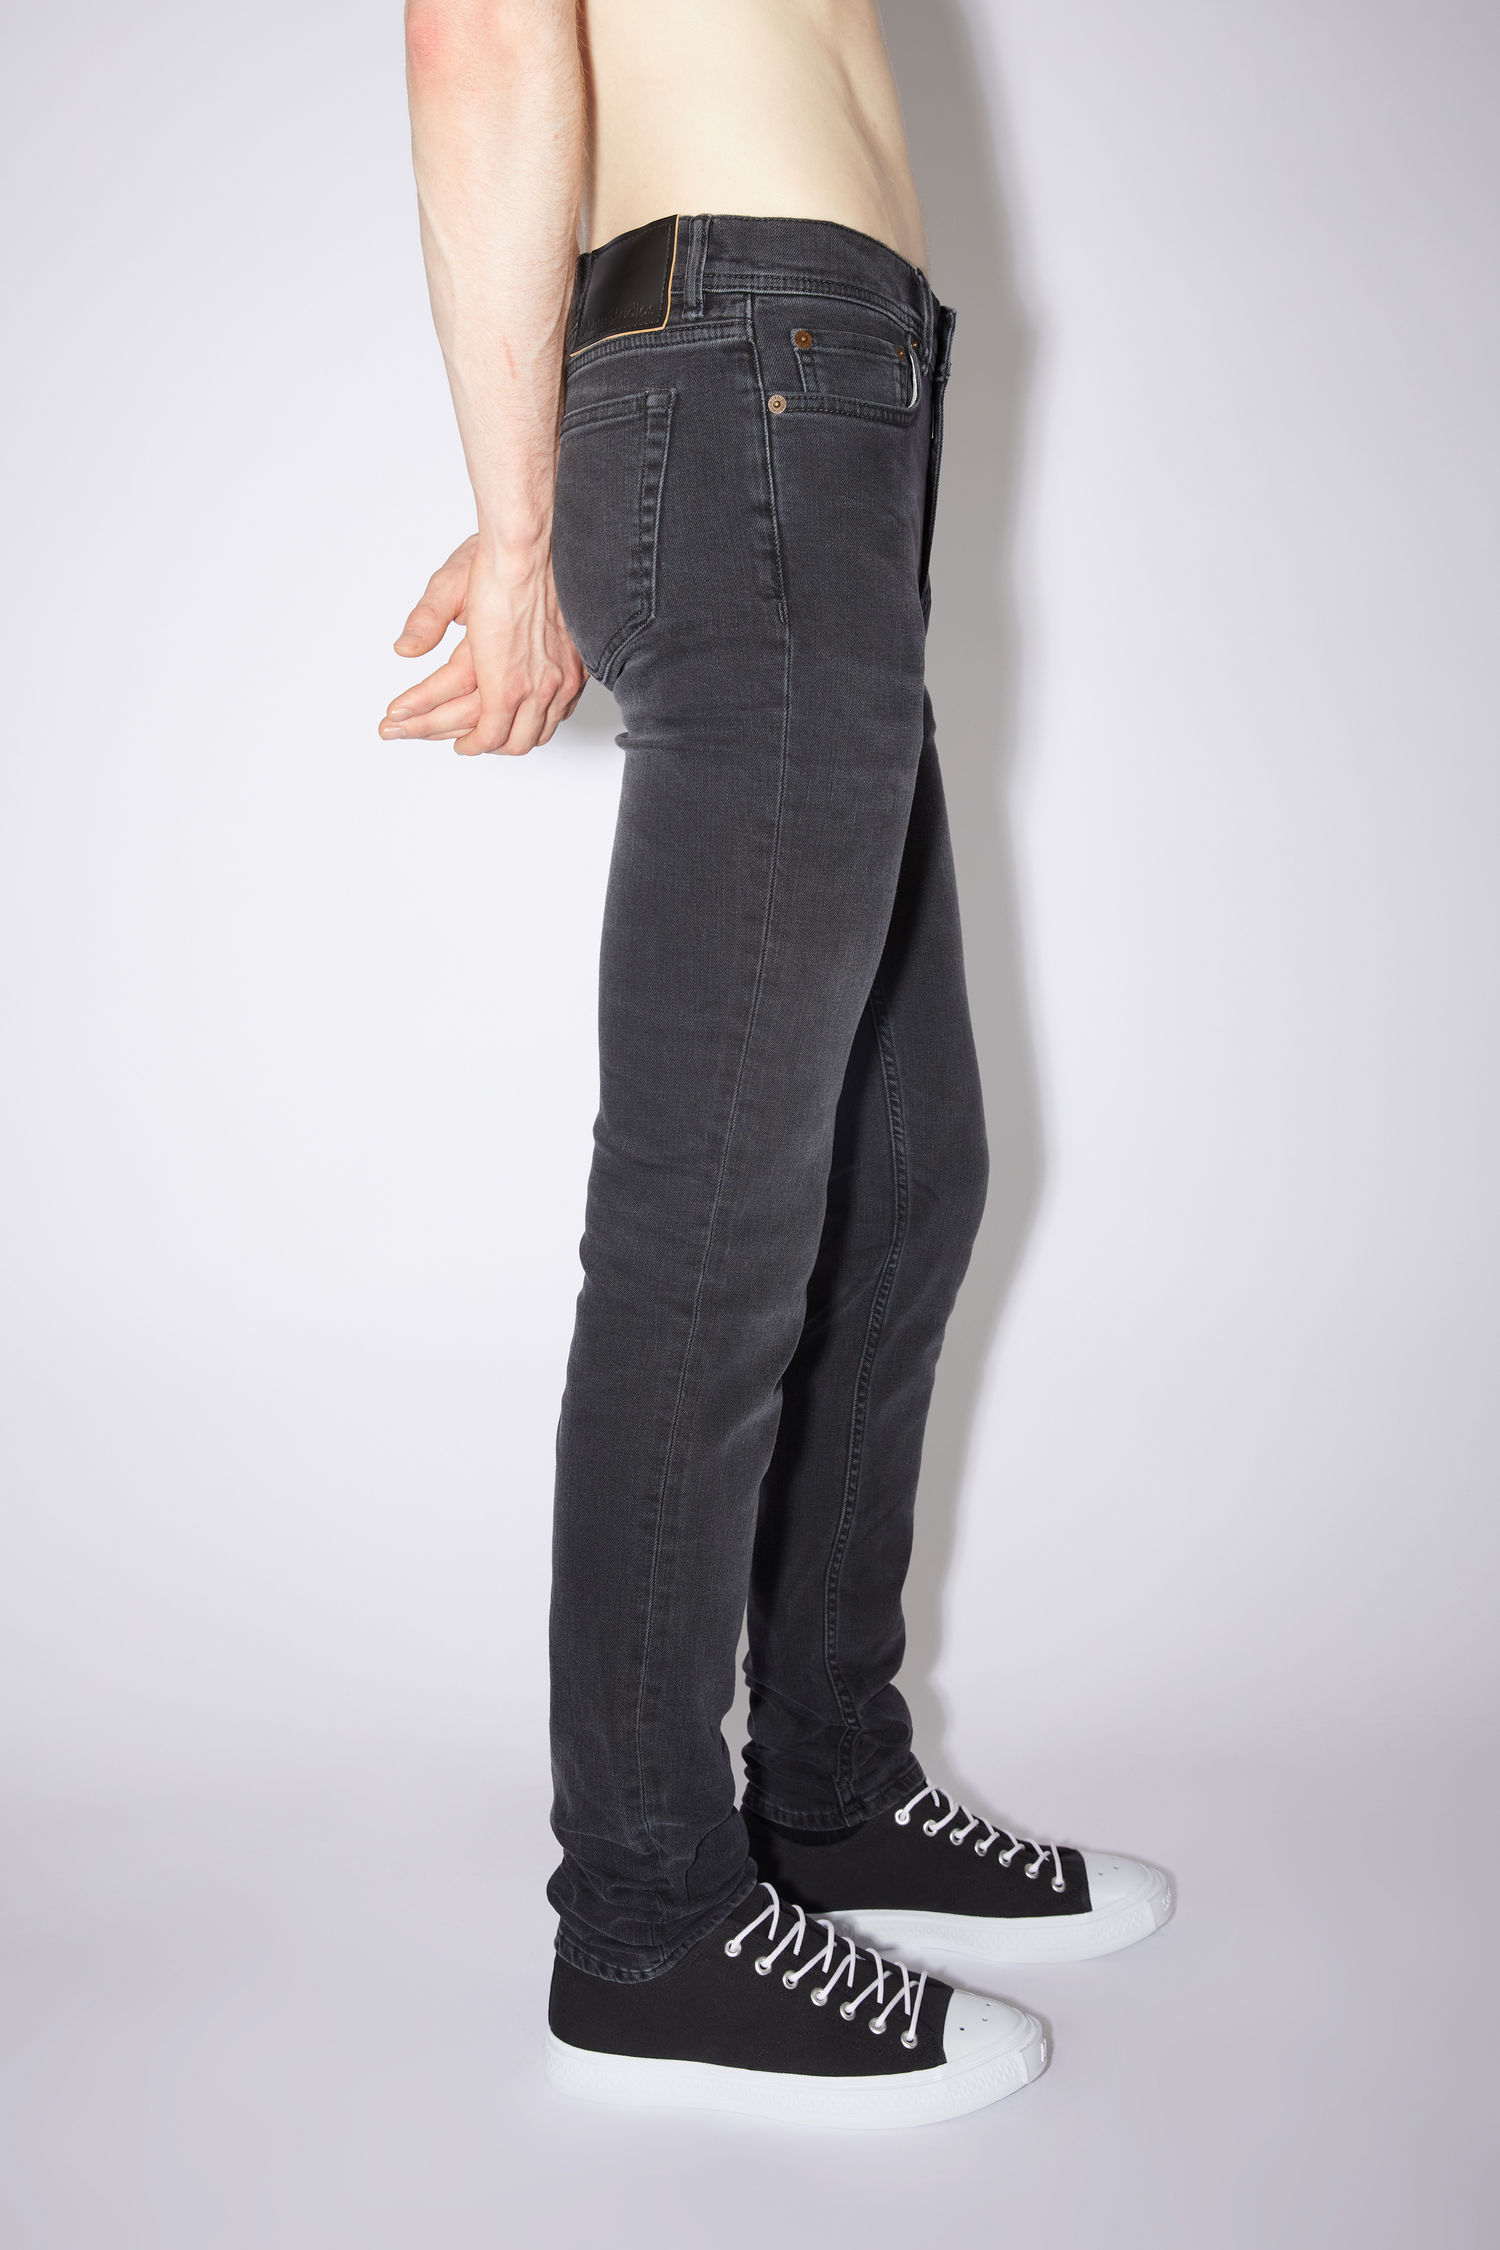 Rundt om Aja erotisk Acne Studios - Skinny fit jeans - Used black